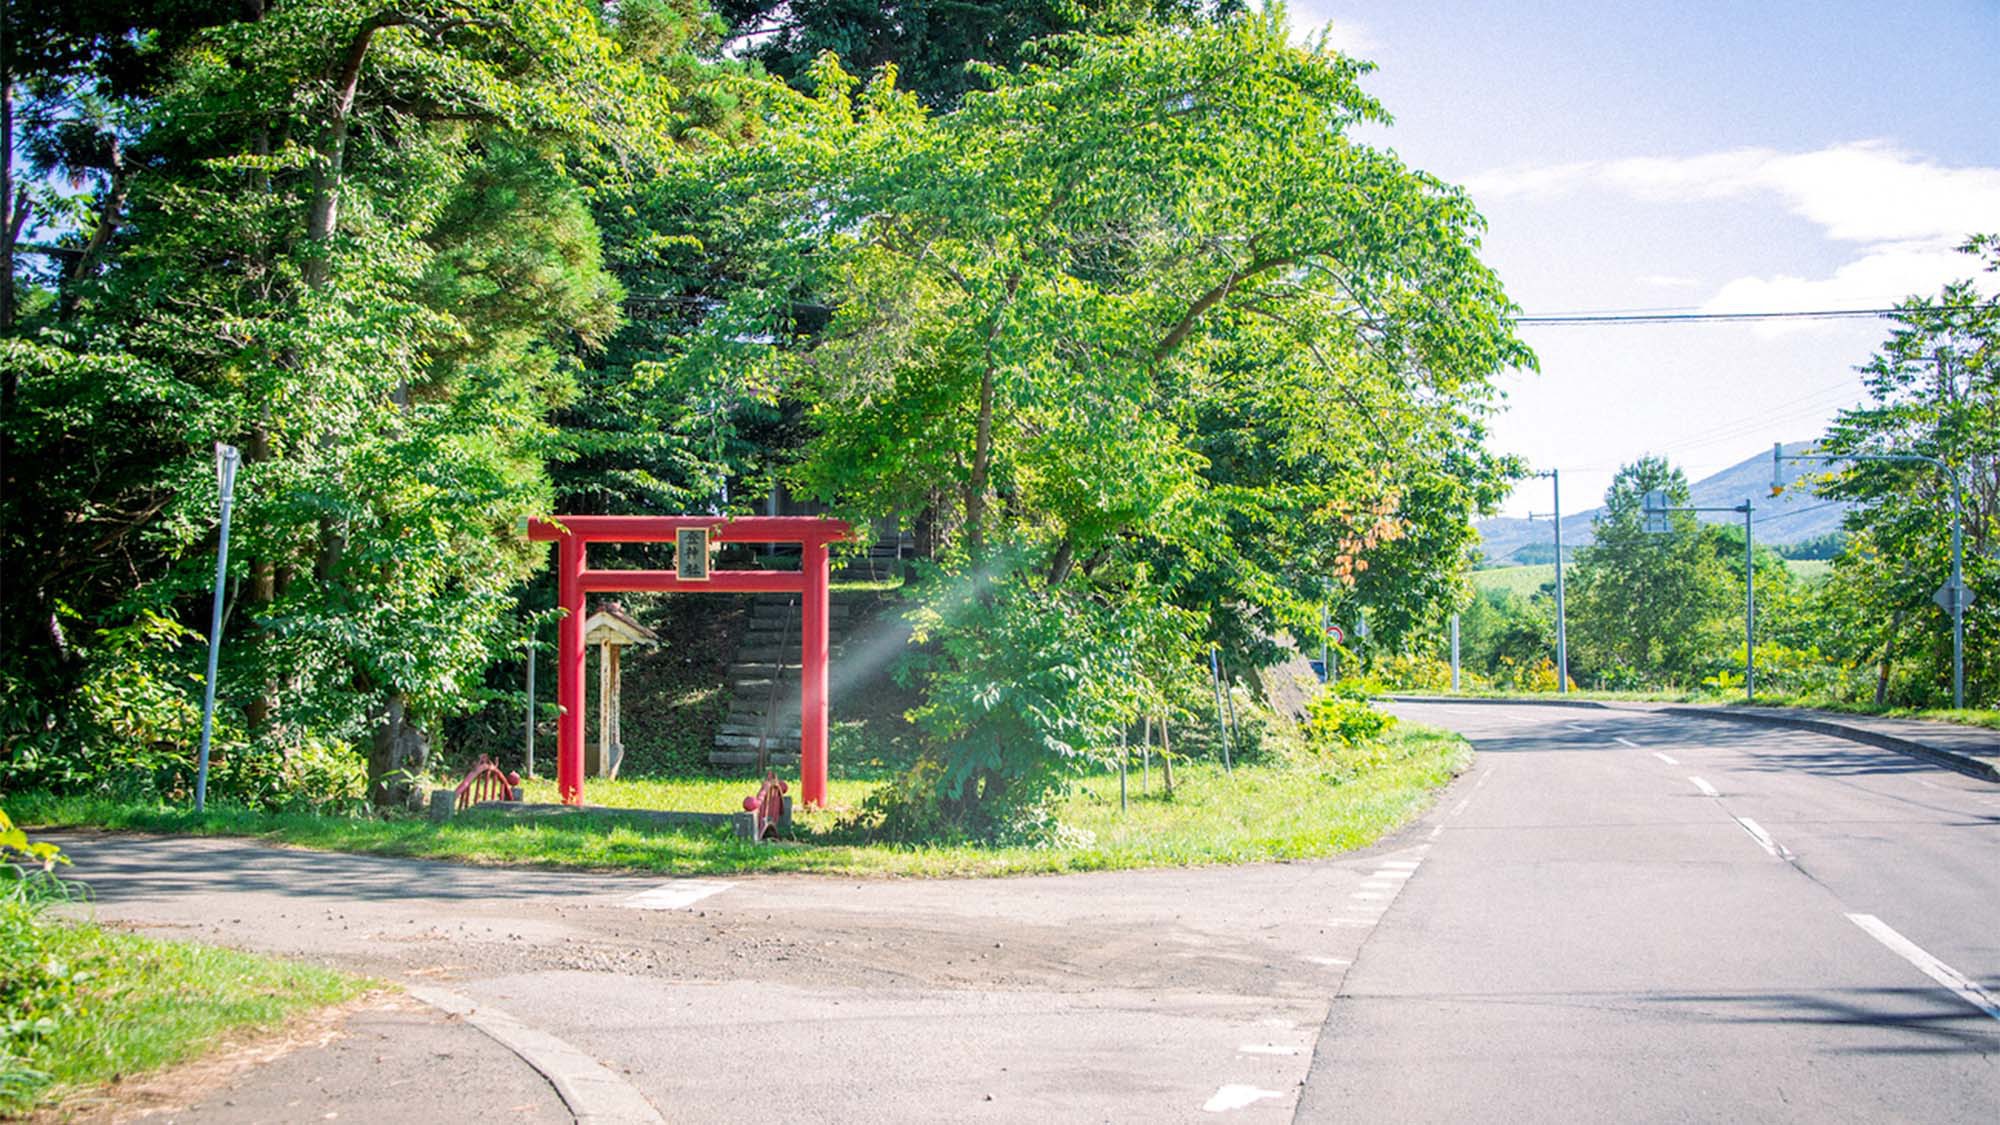 ・登神社赤い鳥居と小さな橋が目印です